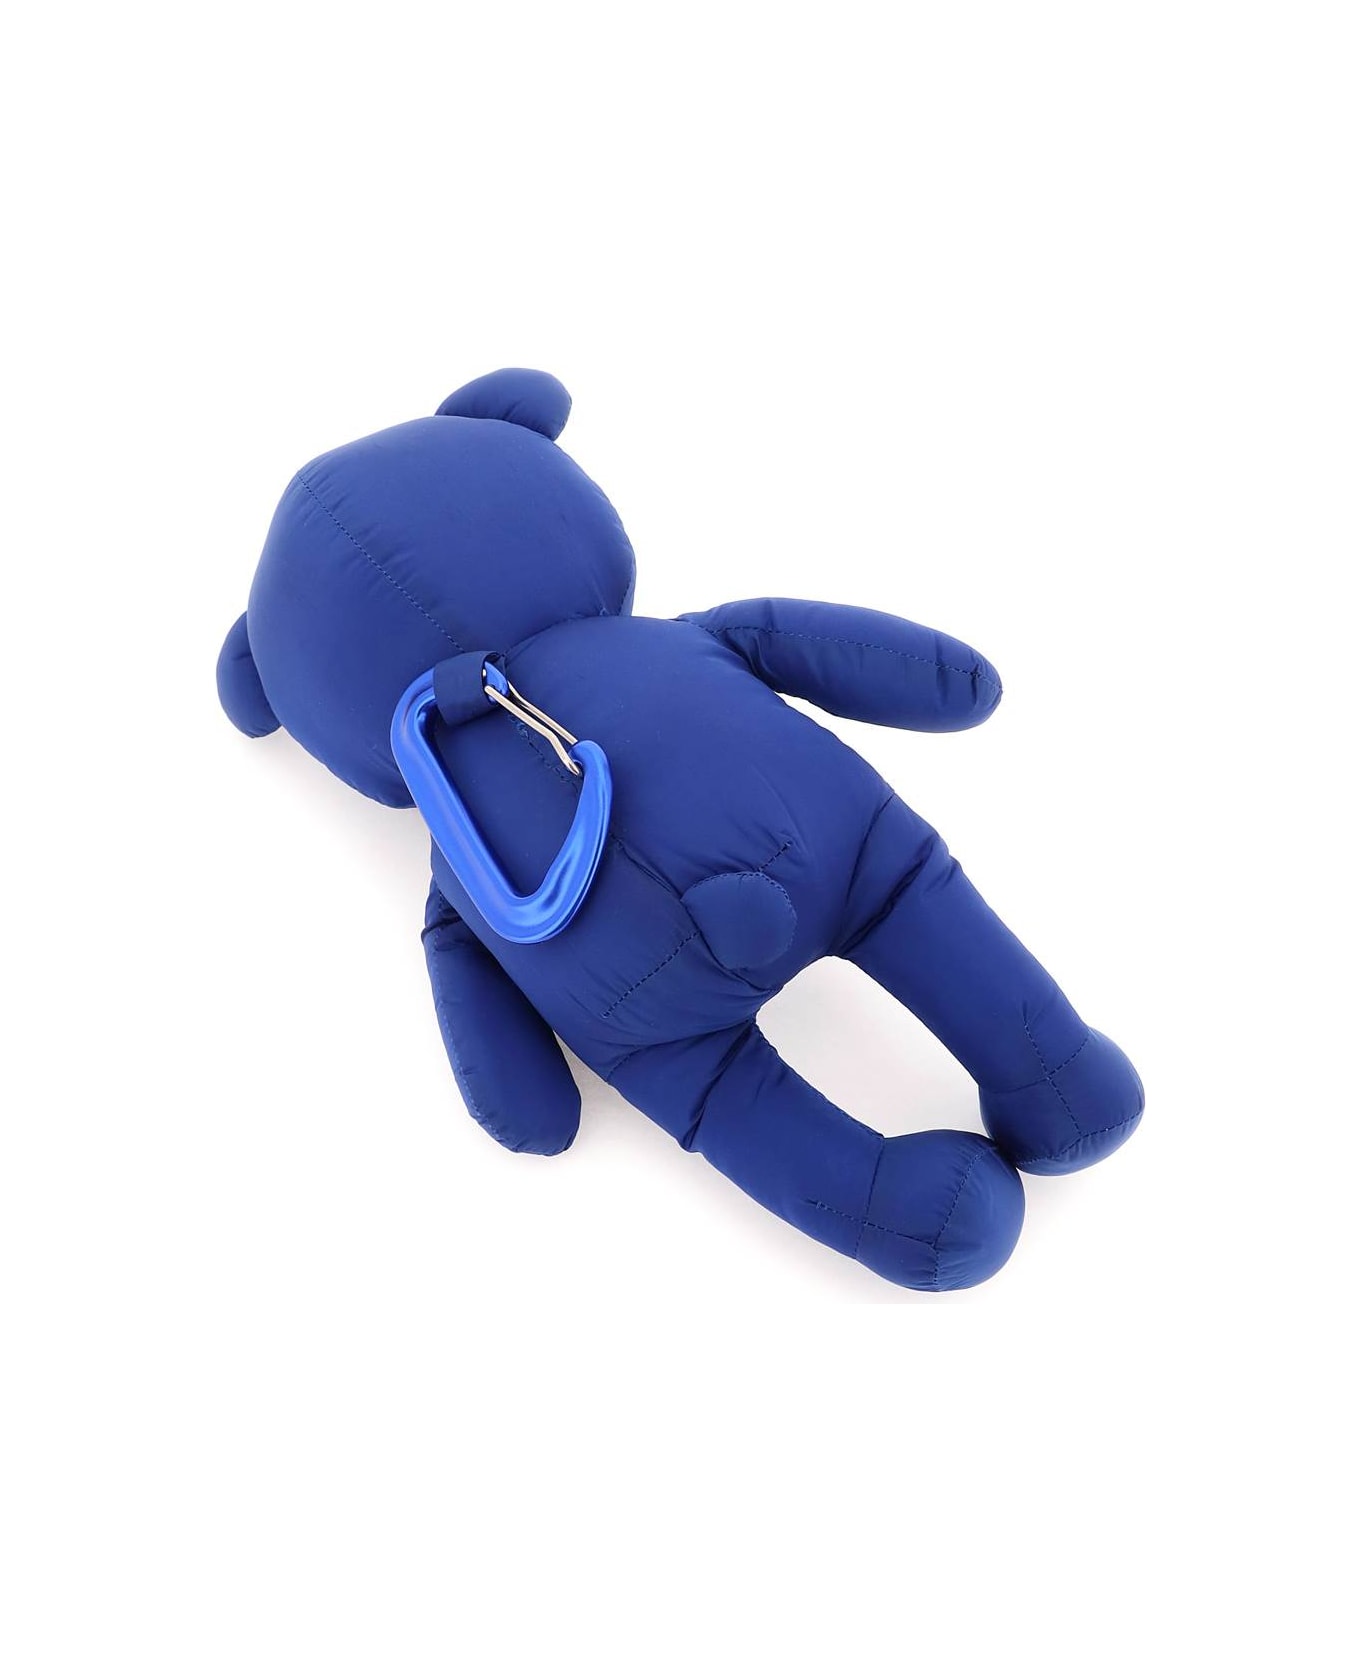 Dsquared2 Teddy Bear Keychain - BLU (Blue) キーリング